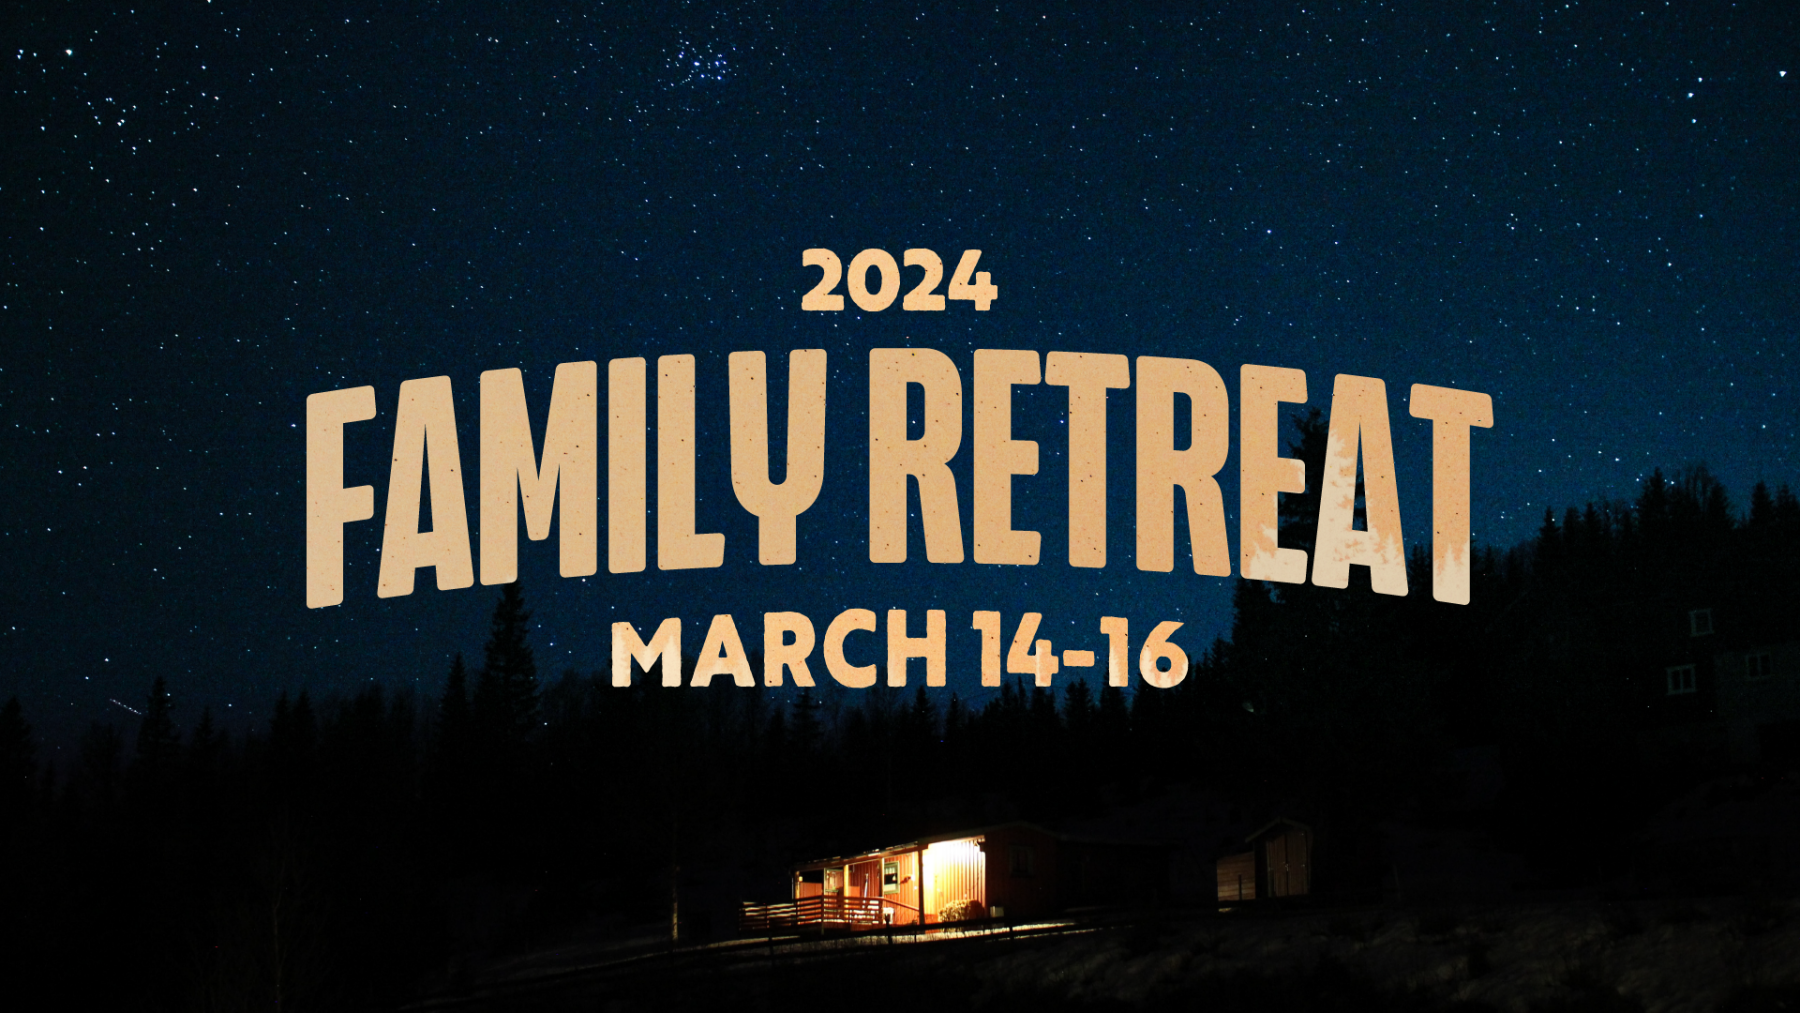 Family Retreat